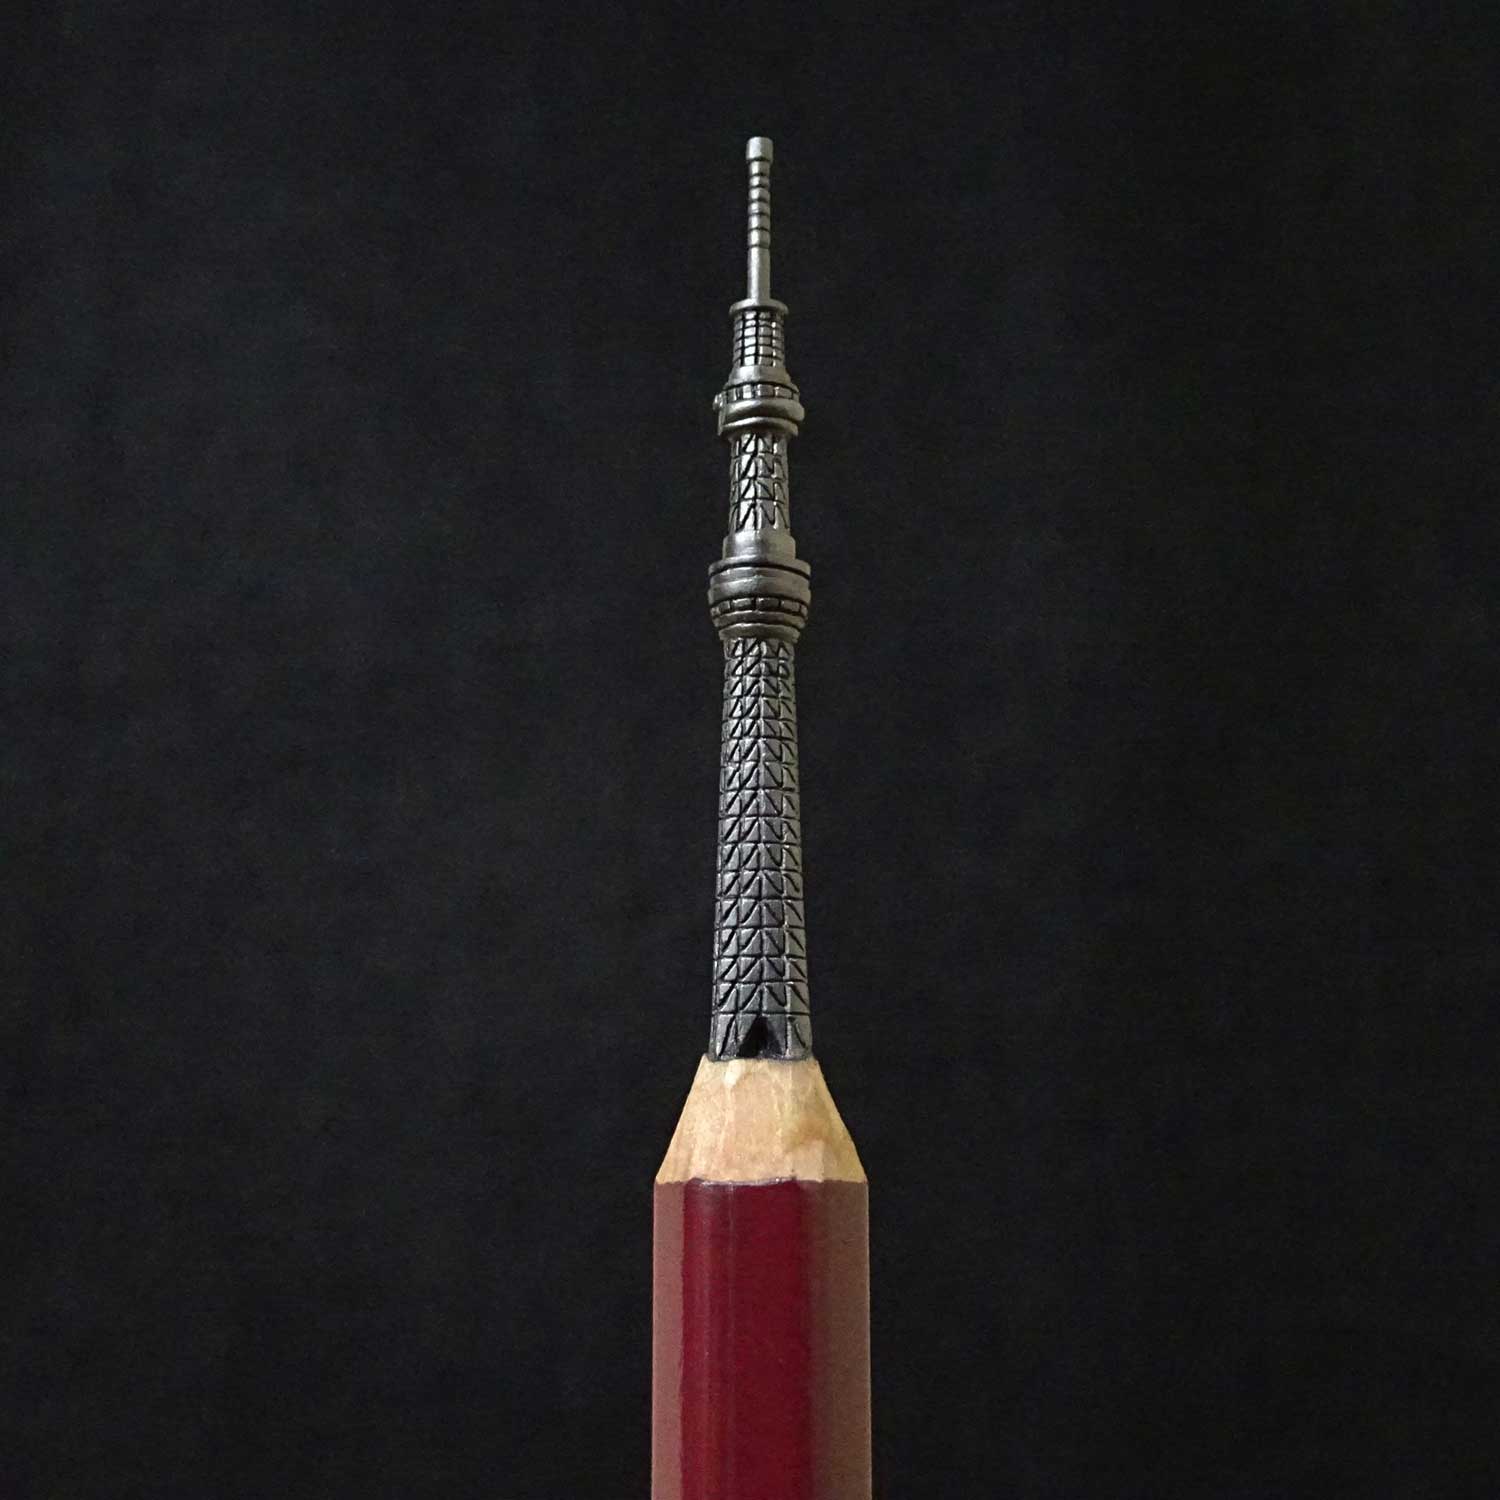 神業 もはや狂気すら感じる 鉛筆の芯で東京スカイツリーを作る鉛筆彫刻家の技に驚く 1 2 ページ ねとらぼ